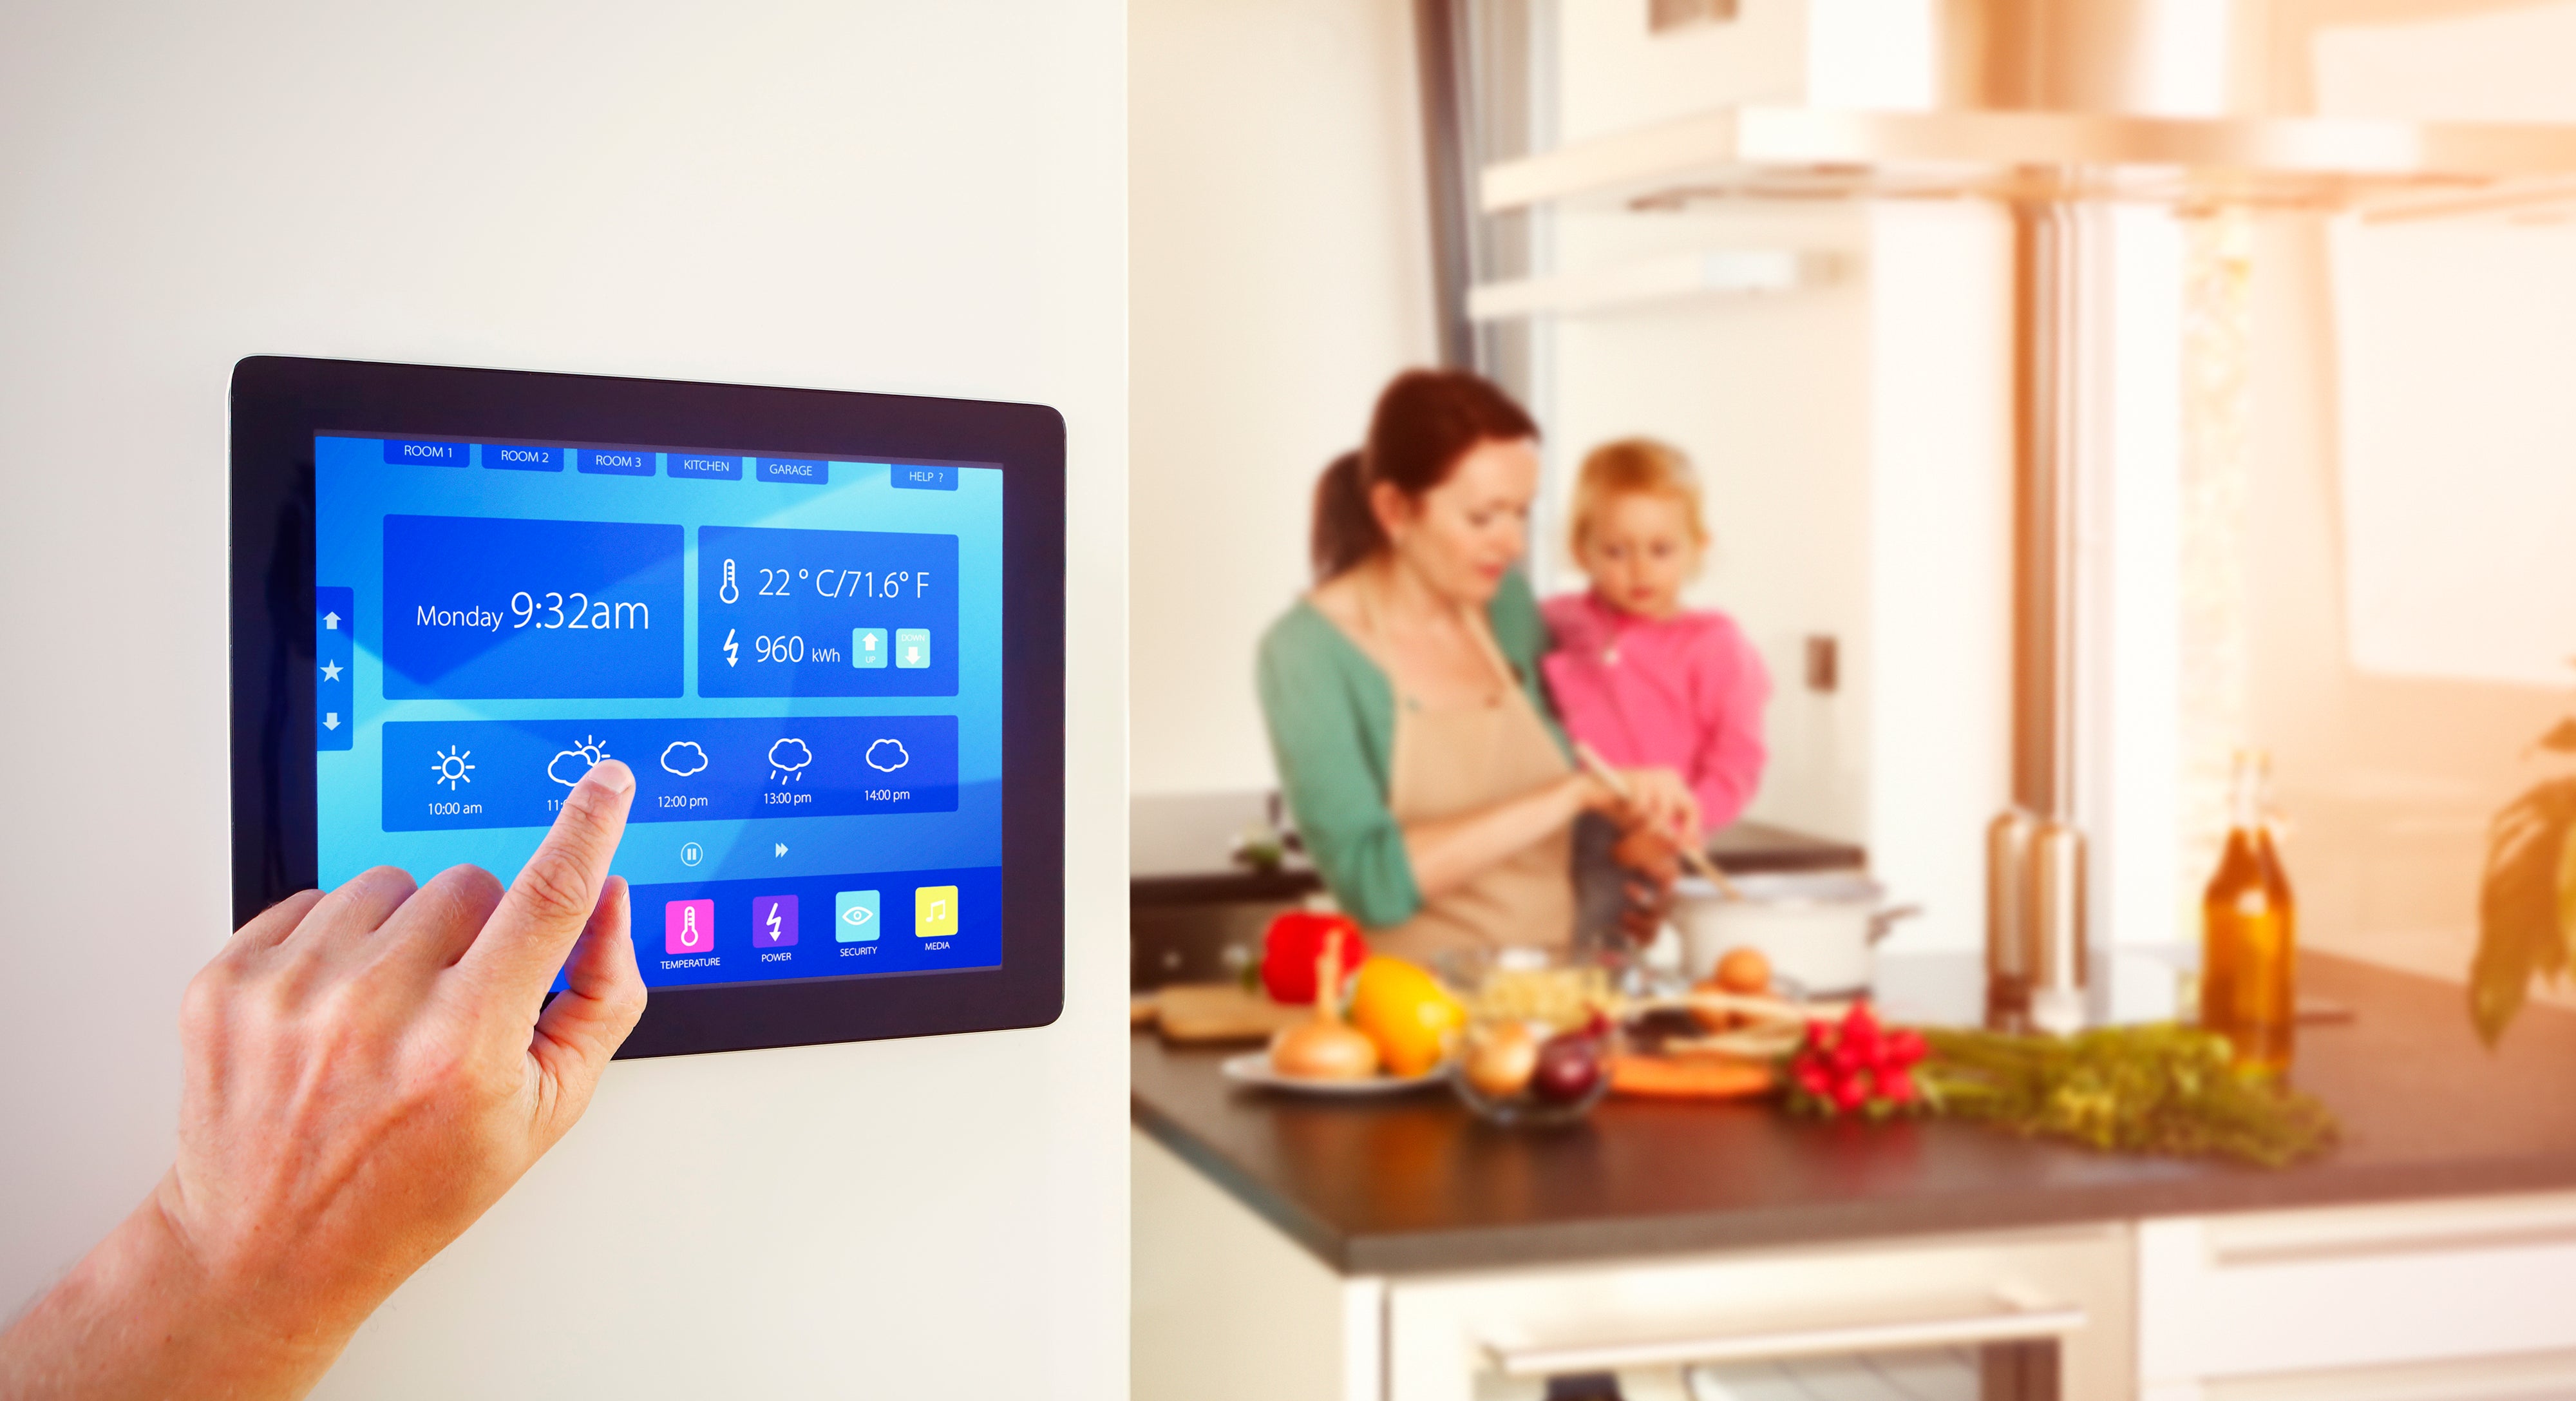 Smart home technology needs smart energy users | Waterloo News | University of Waterloo